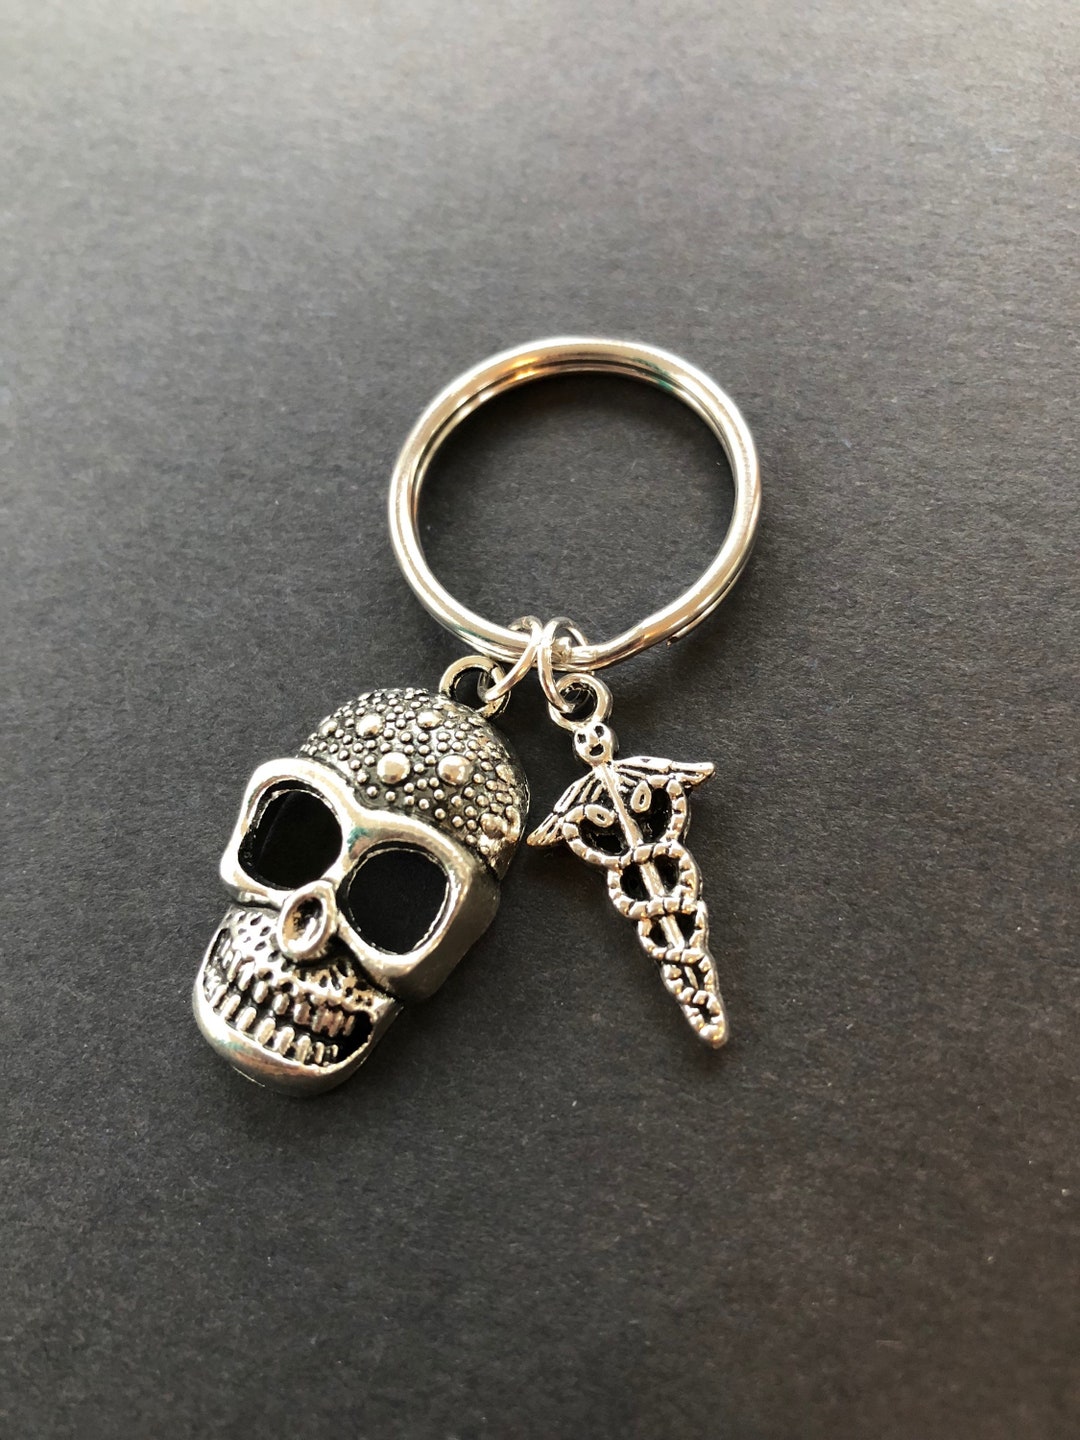 Xray Tech Gift Skull Keychain Caduceus RT RN Heart Sugar Skull - Etsy